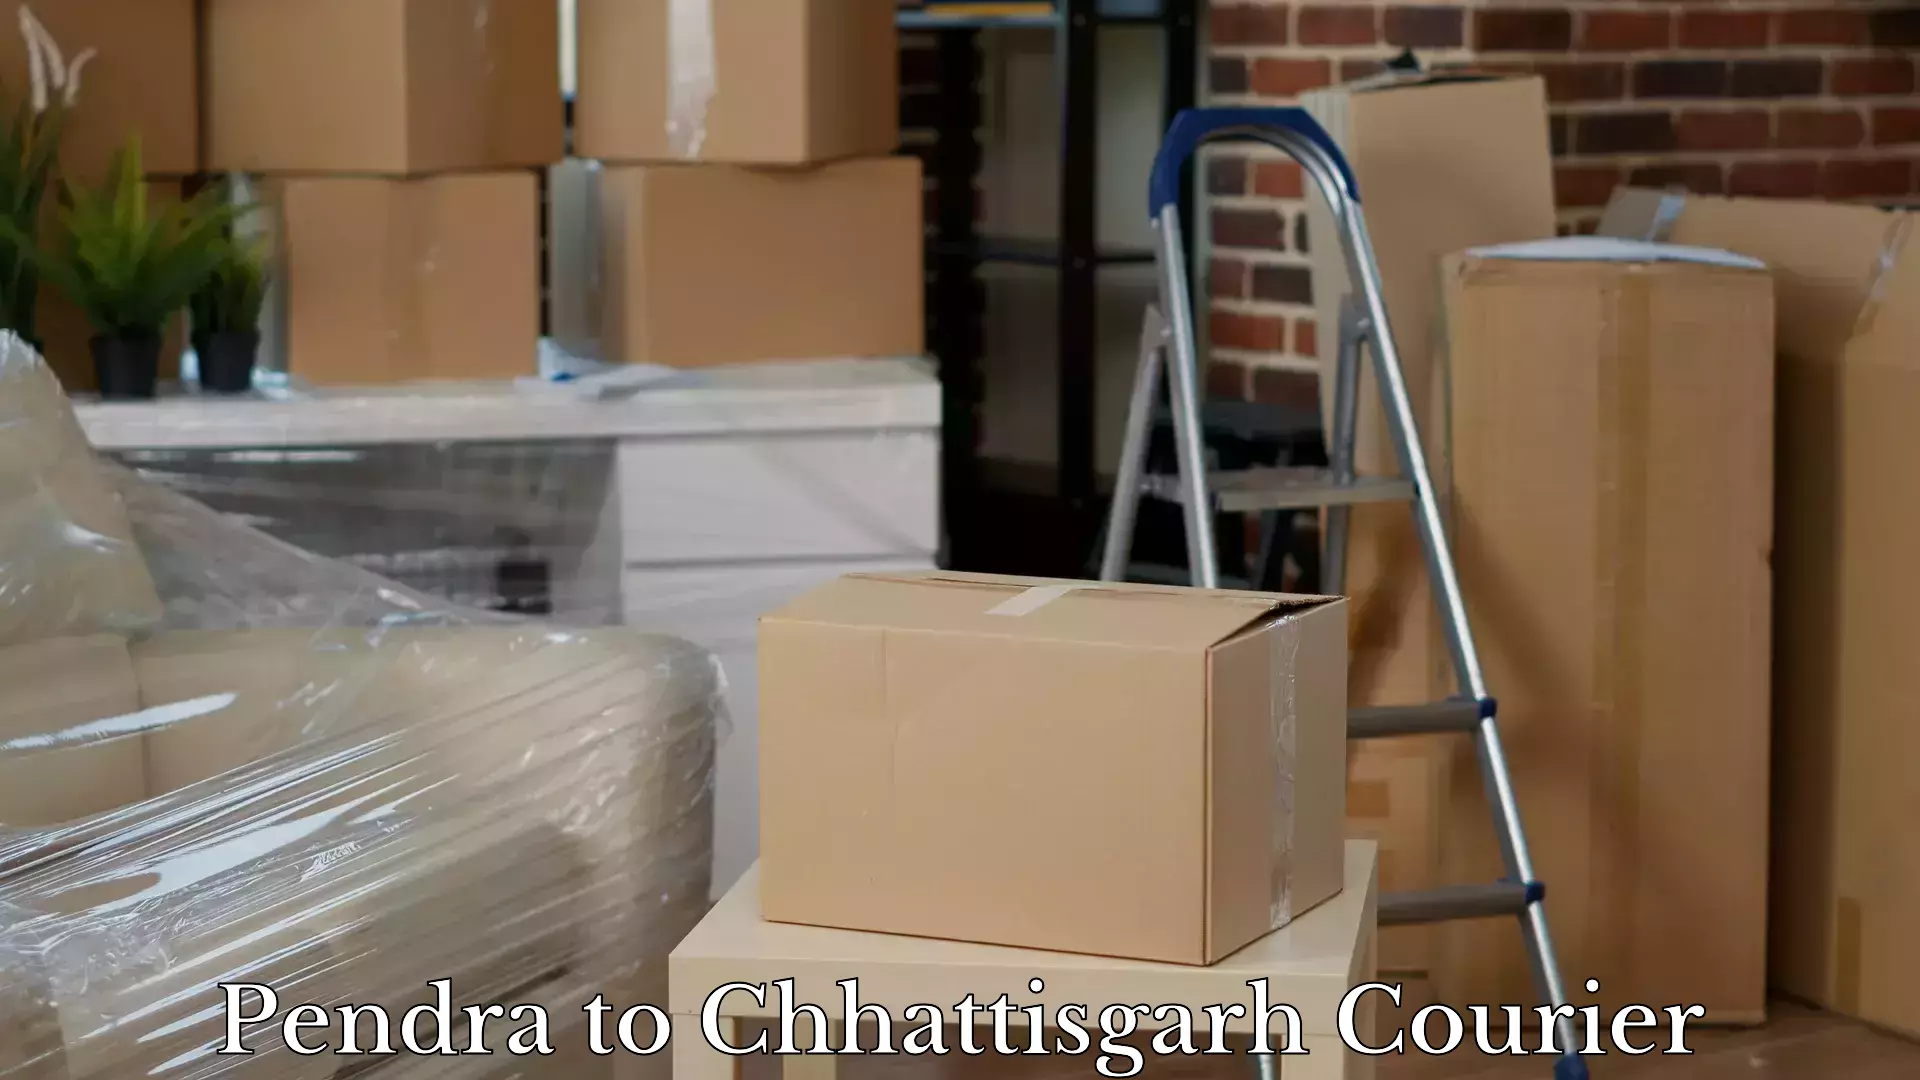 Luggage transport consultancy Pendra to Chhattisgarh